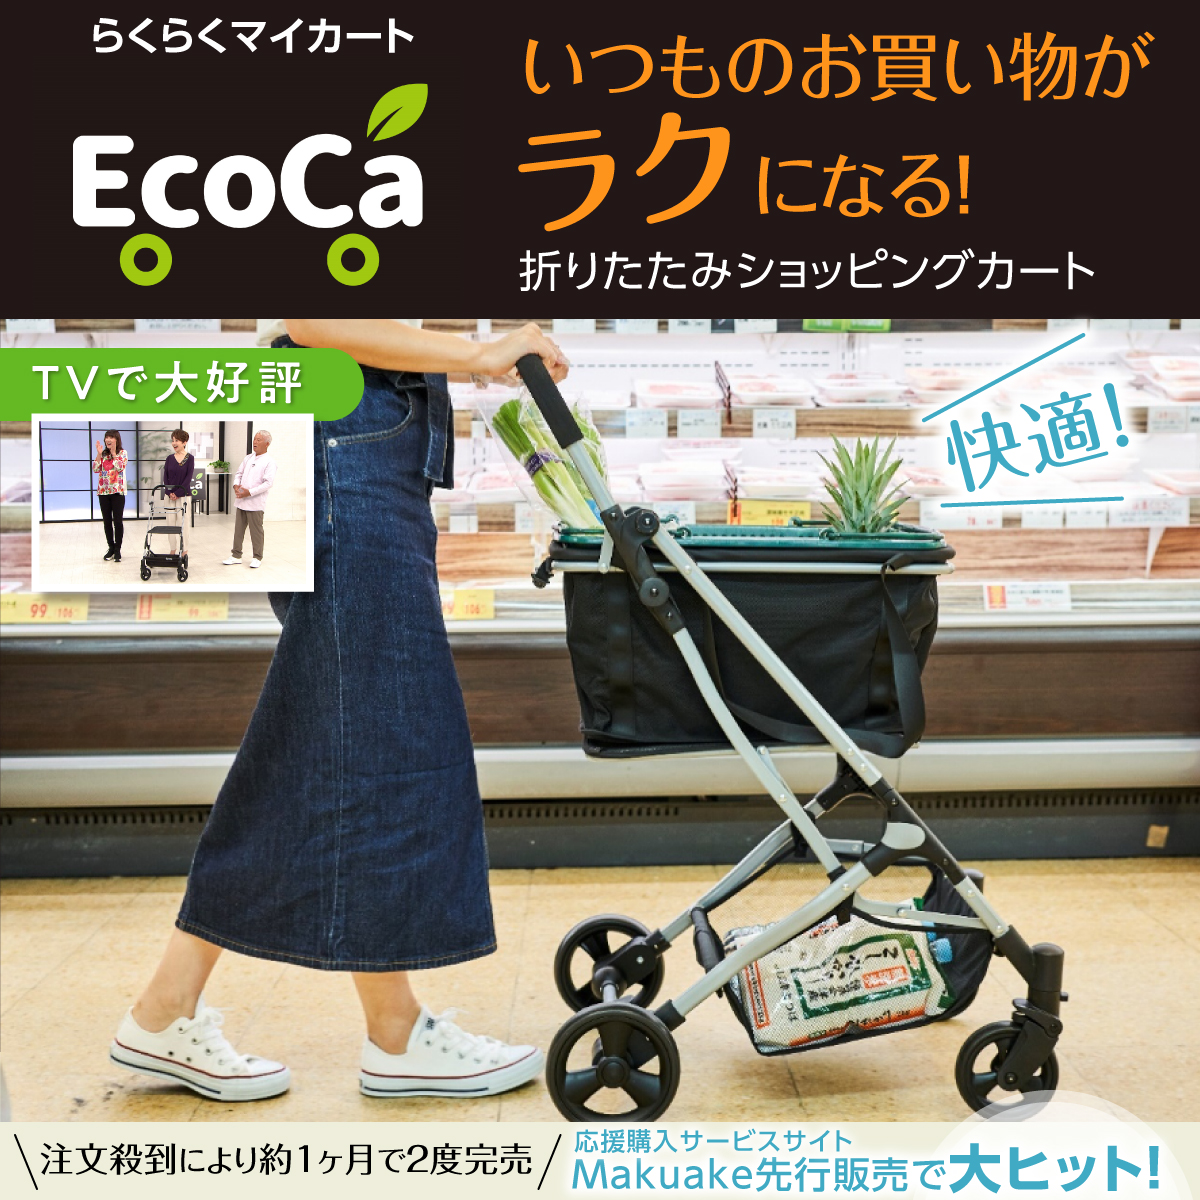 【マイバック2個セット】Ecoca エコカ (本体+マイバッグ2個)【Bタイプ】